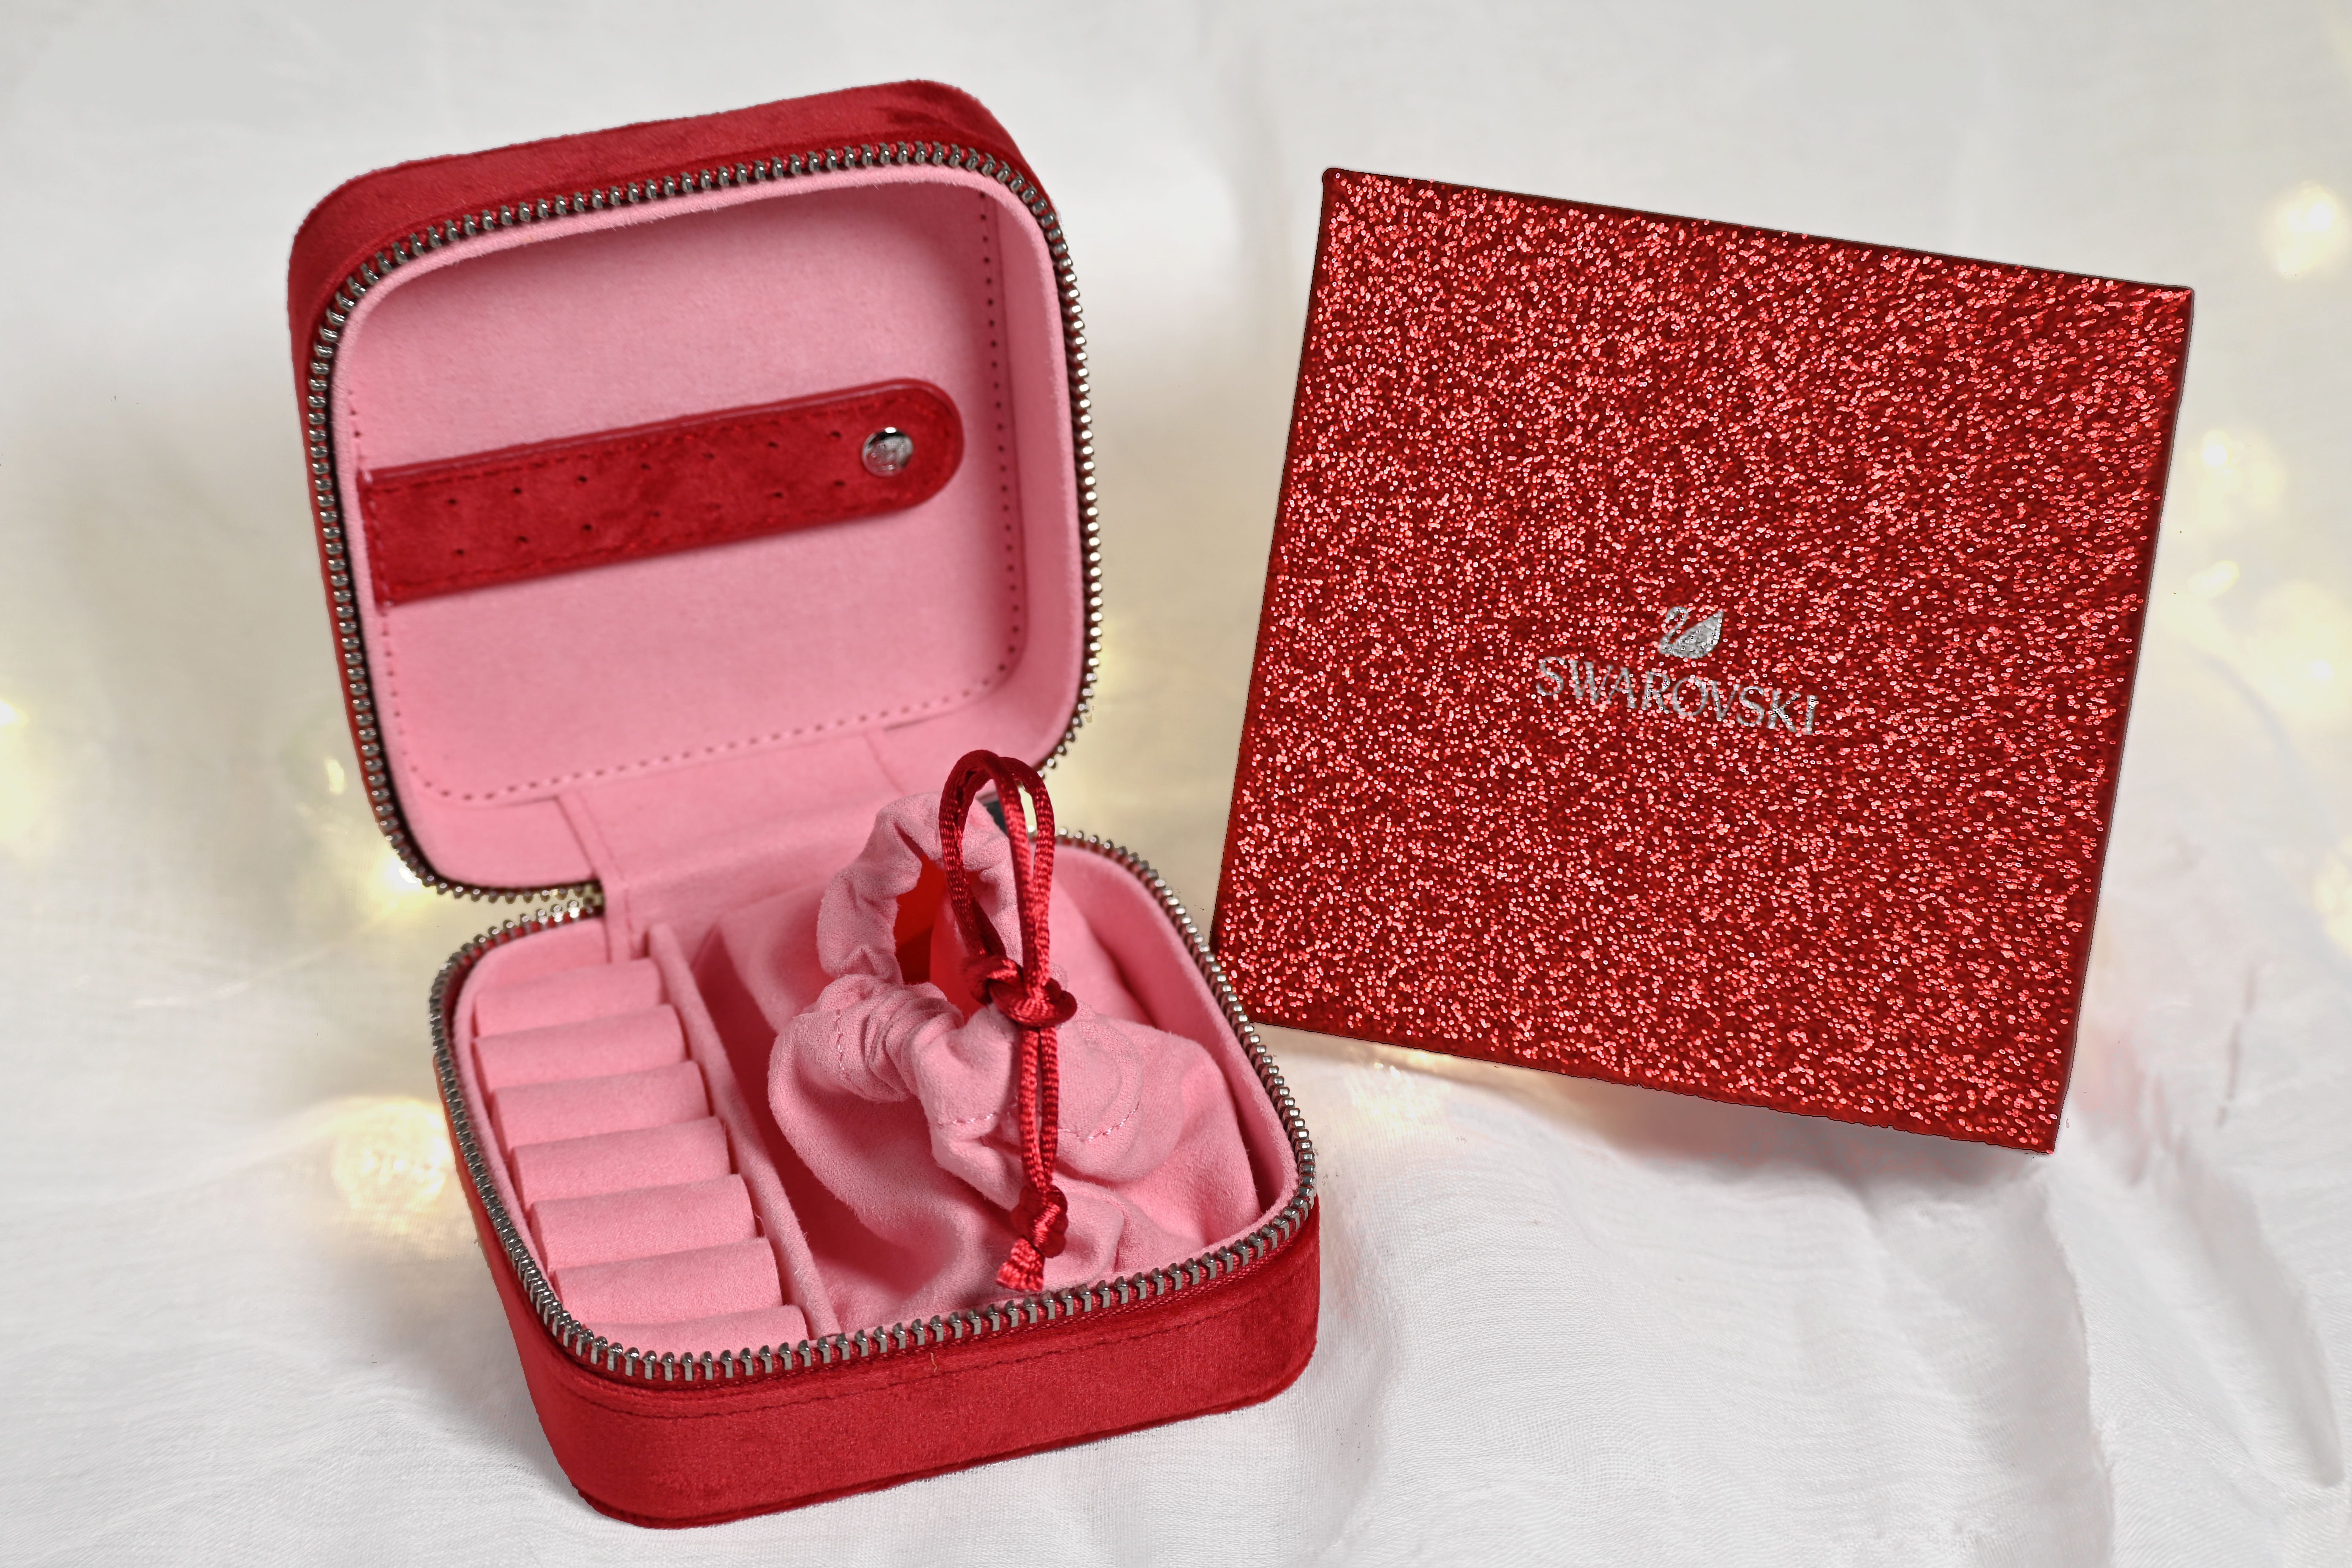 Swarovski Red Jewelry Box